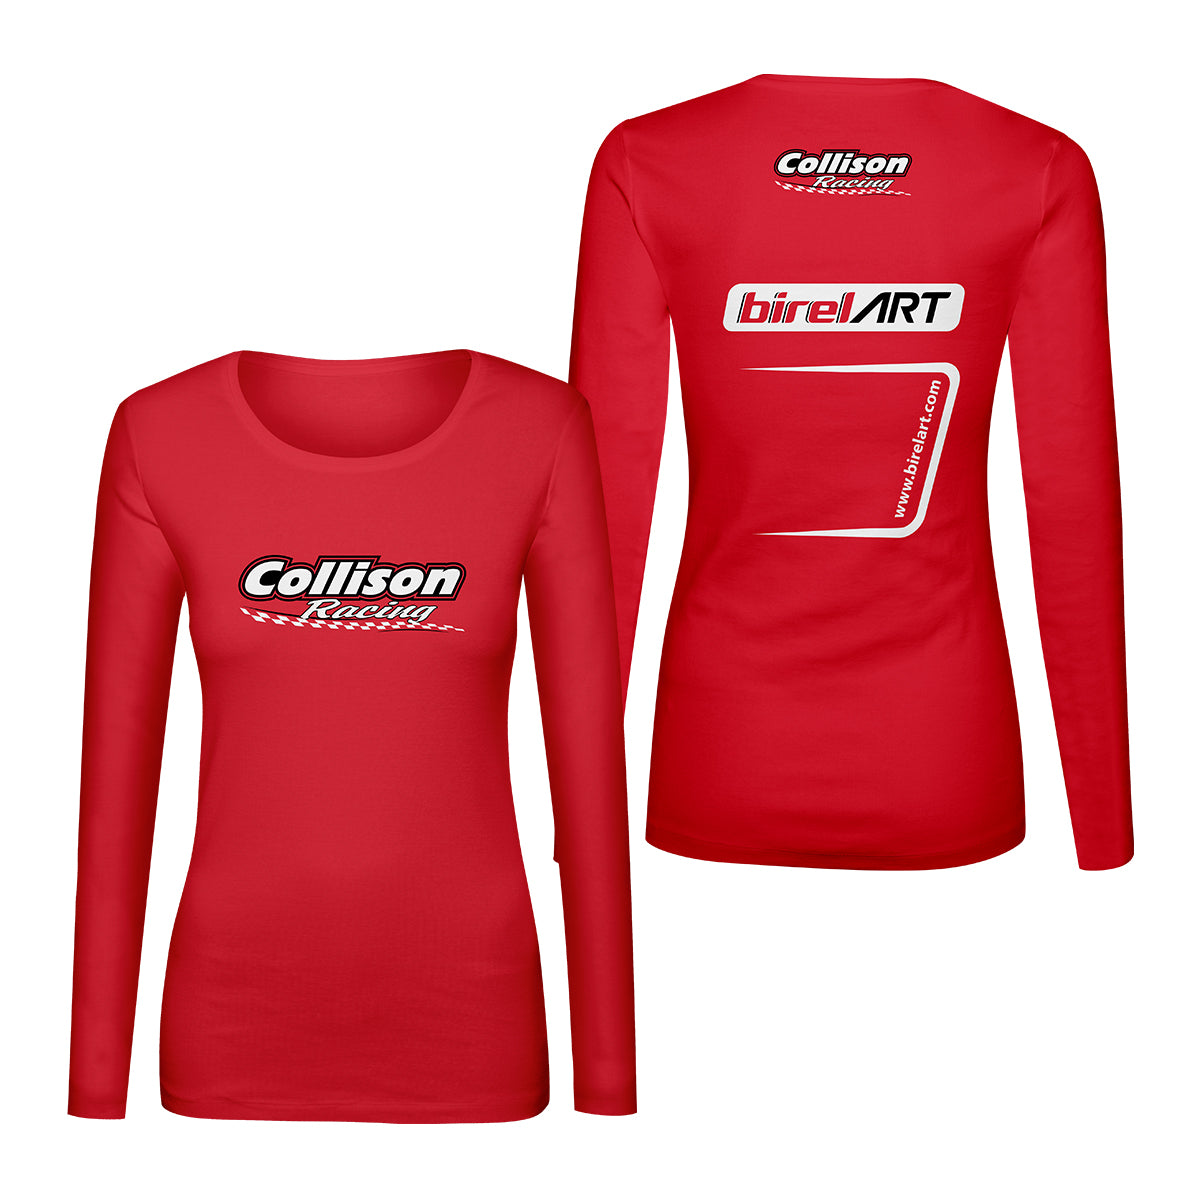 Collison Racing / Birel Ladies Long Sleeve 2 Side Shirt